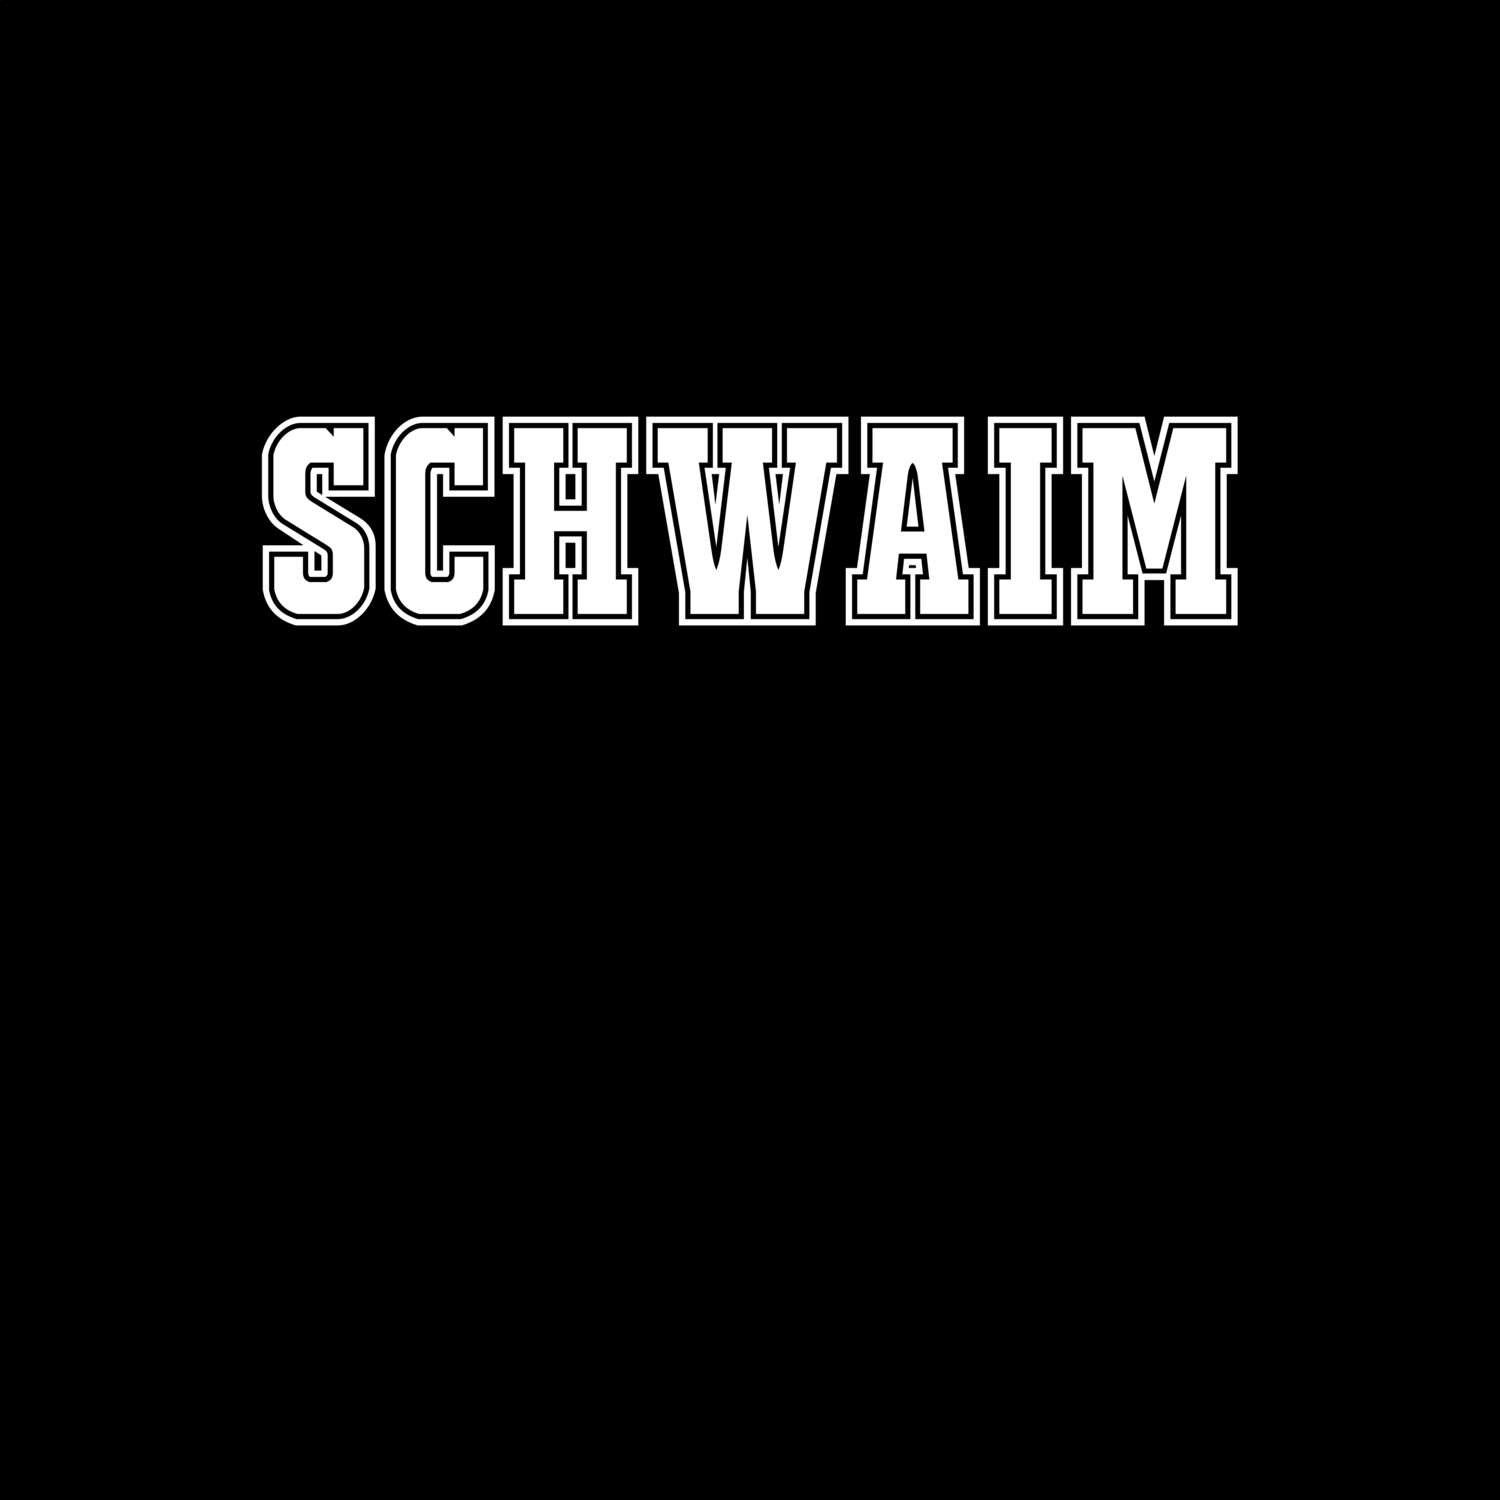 Schwaim T-Shirt »Classic«